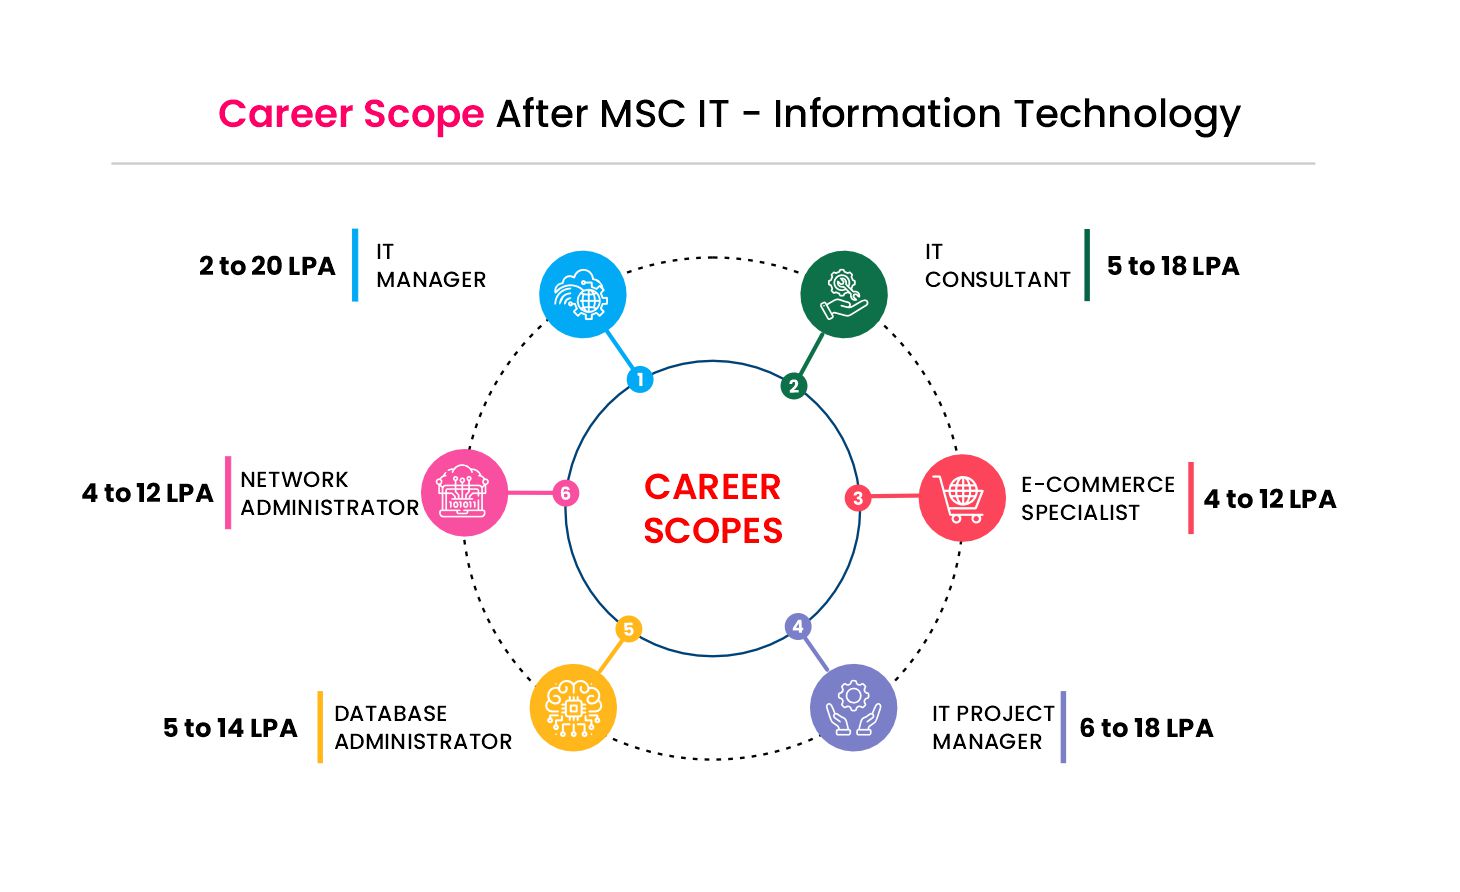 MSc IT Career